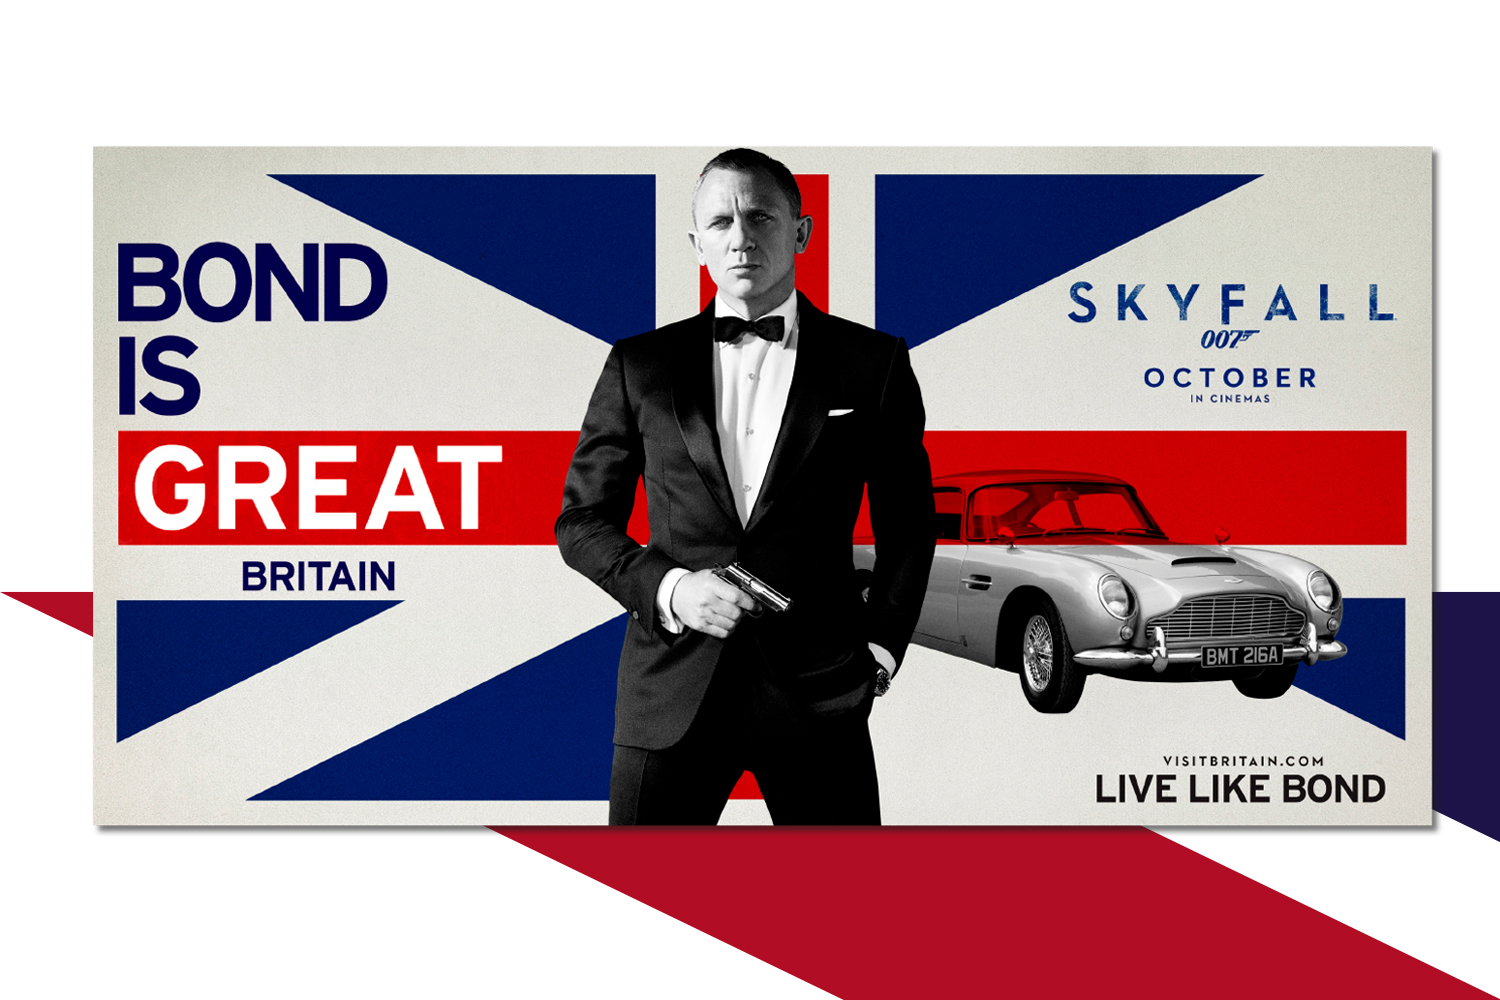 Affiche de la campagne Bond is Great qui met en avant le tourisme en Grand Bretagne avec James Bond au premier plan